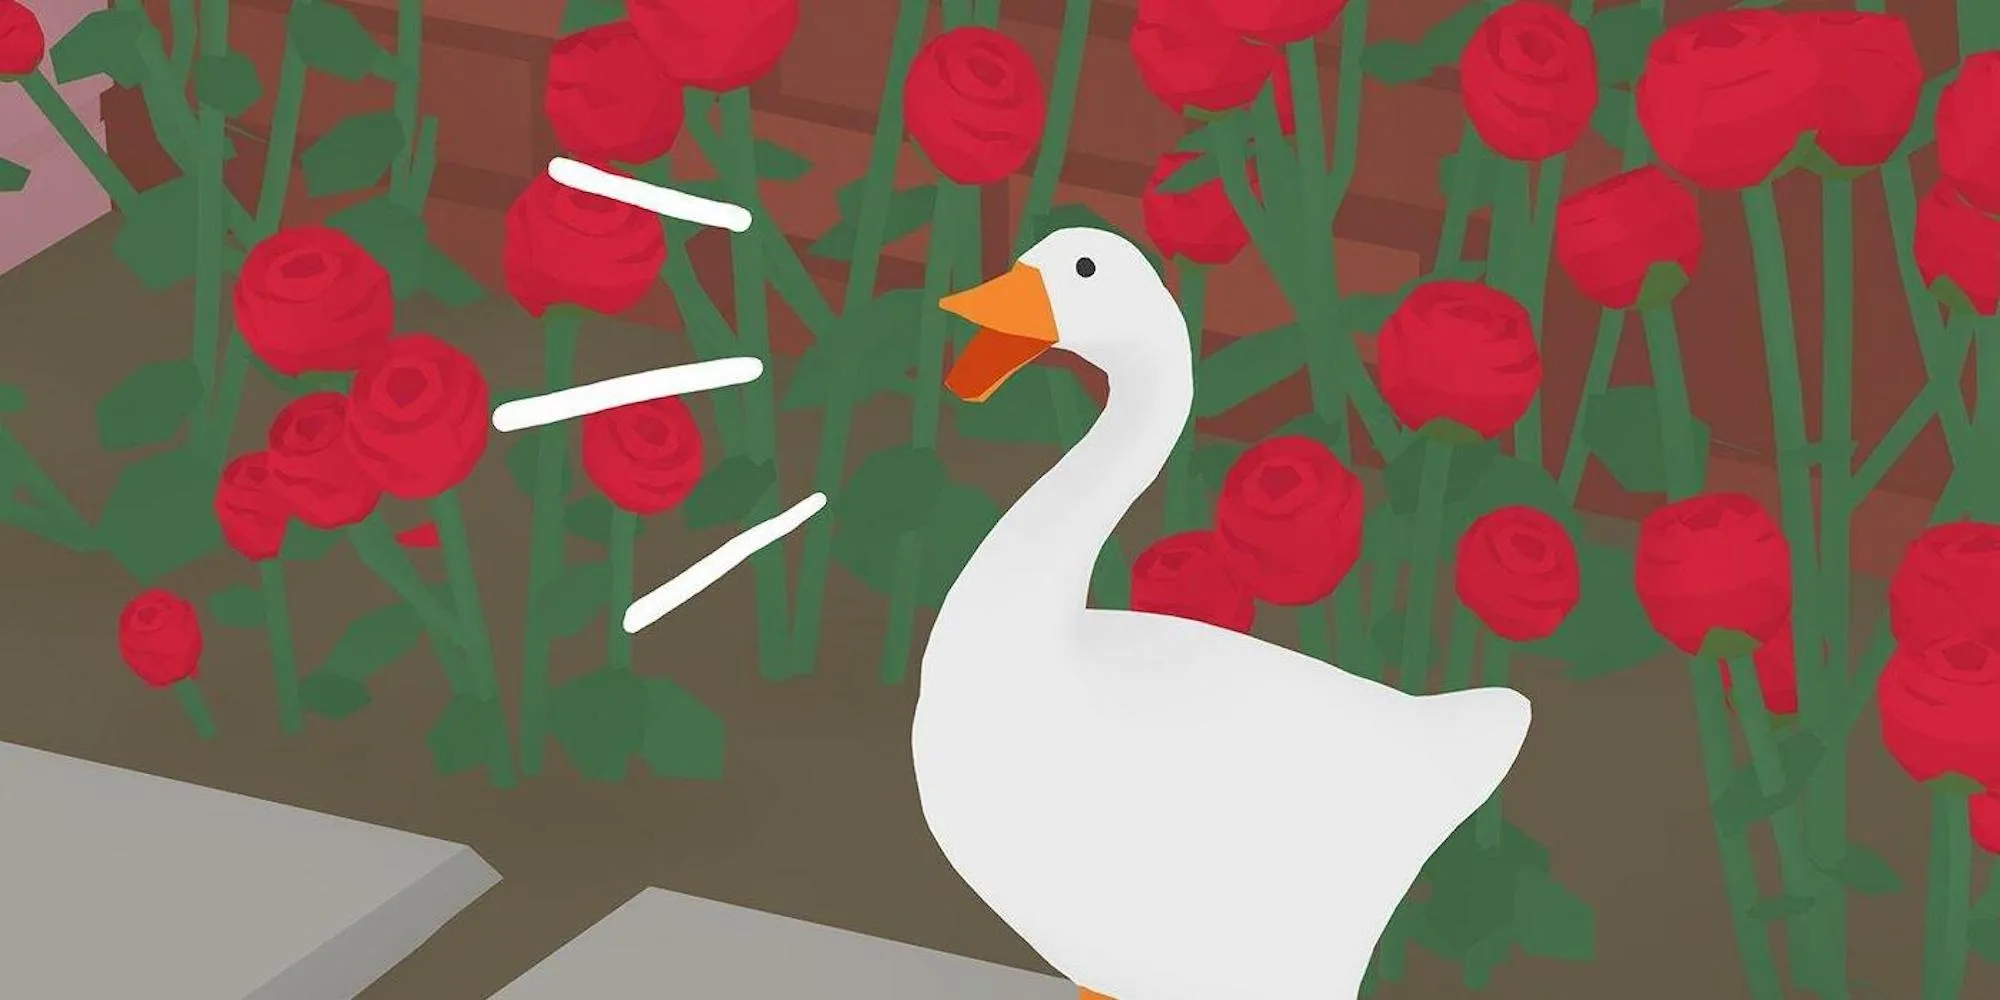 El ganso en Untitled Goose Game